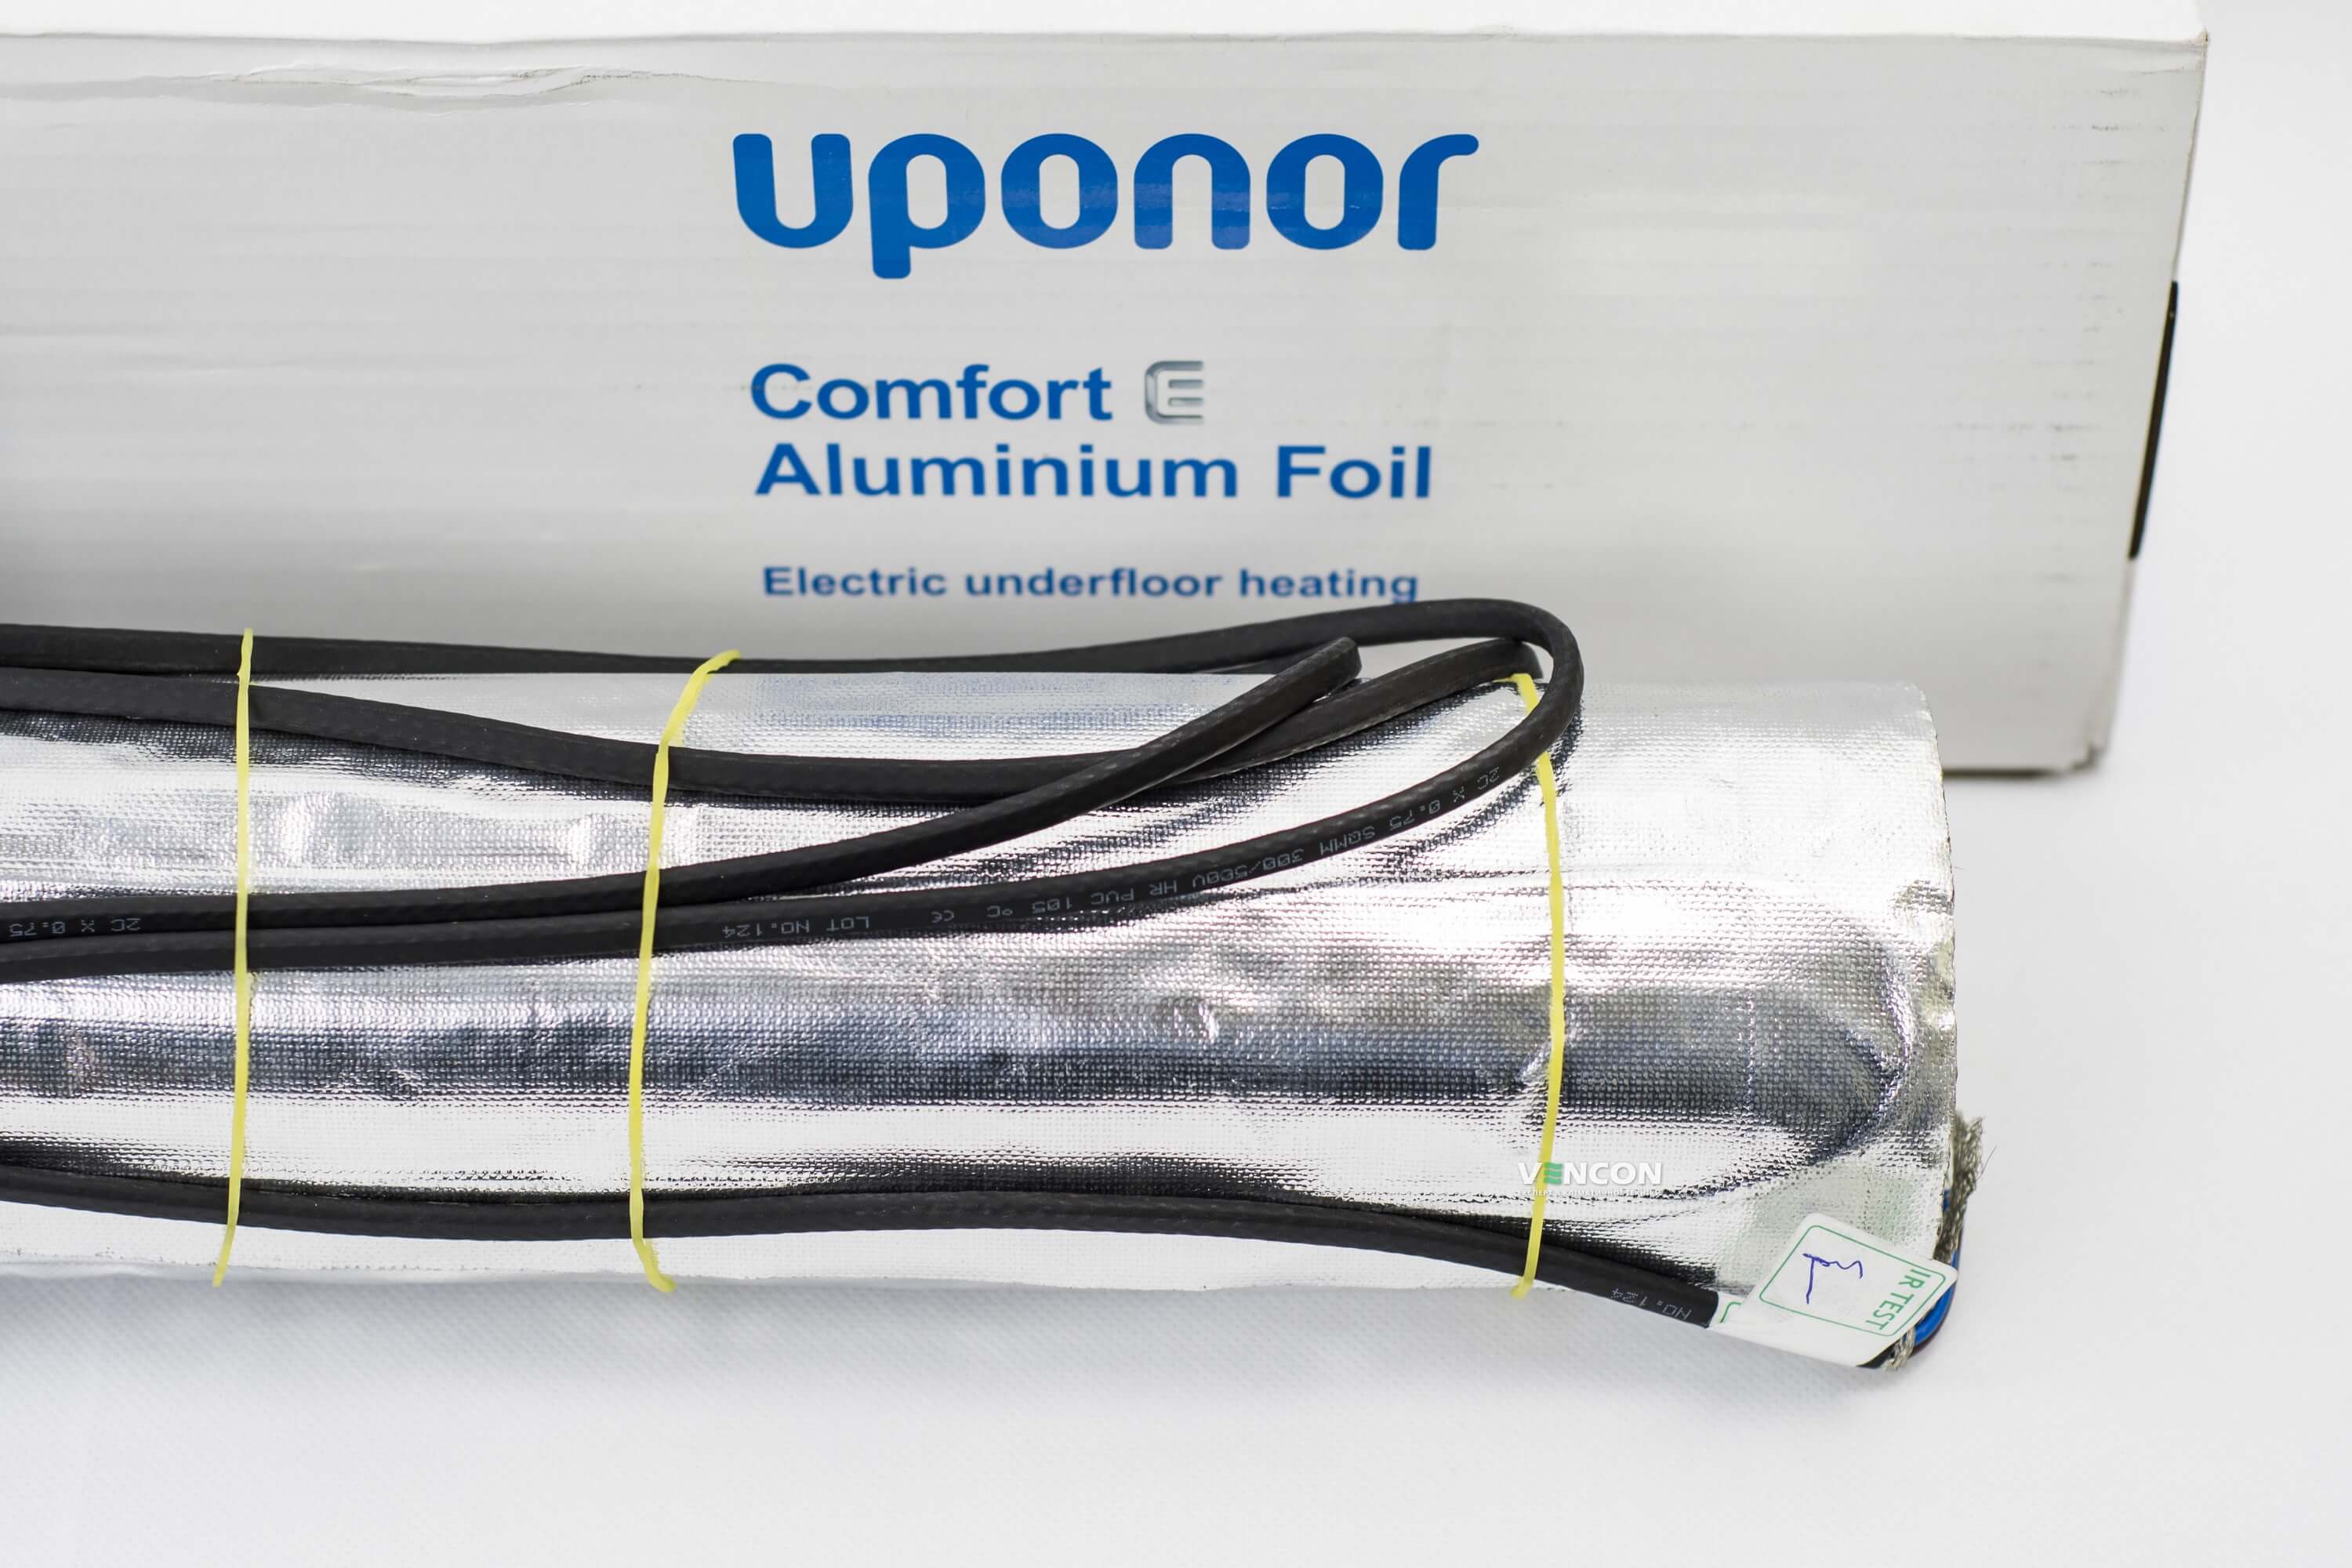 Электрический теплый пол Uponor Aluminium Foil 140-9 отзывы - изображения 5